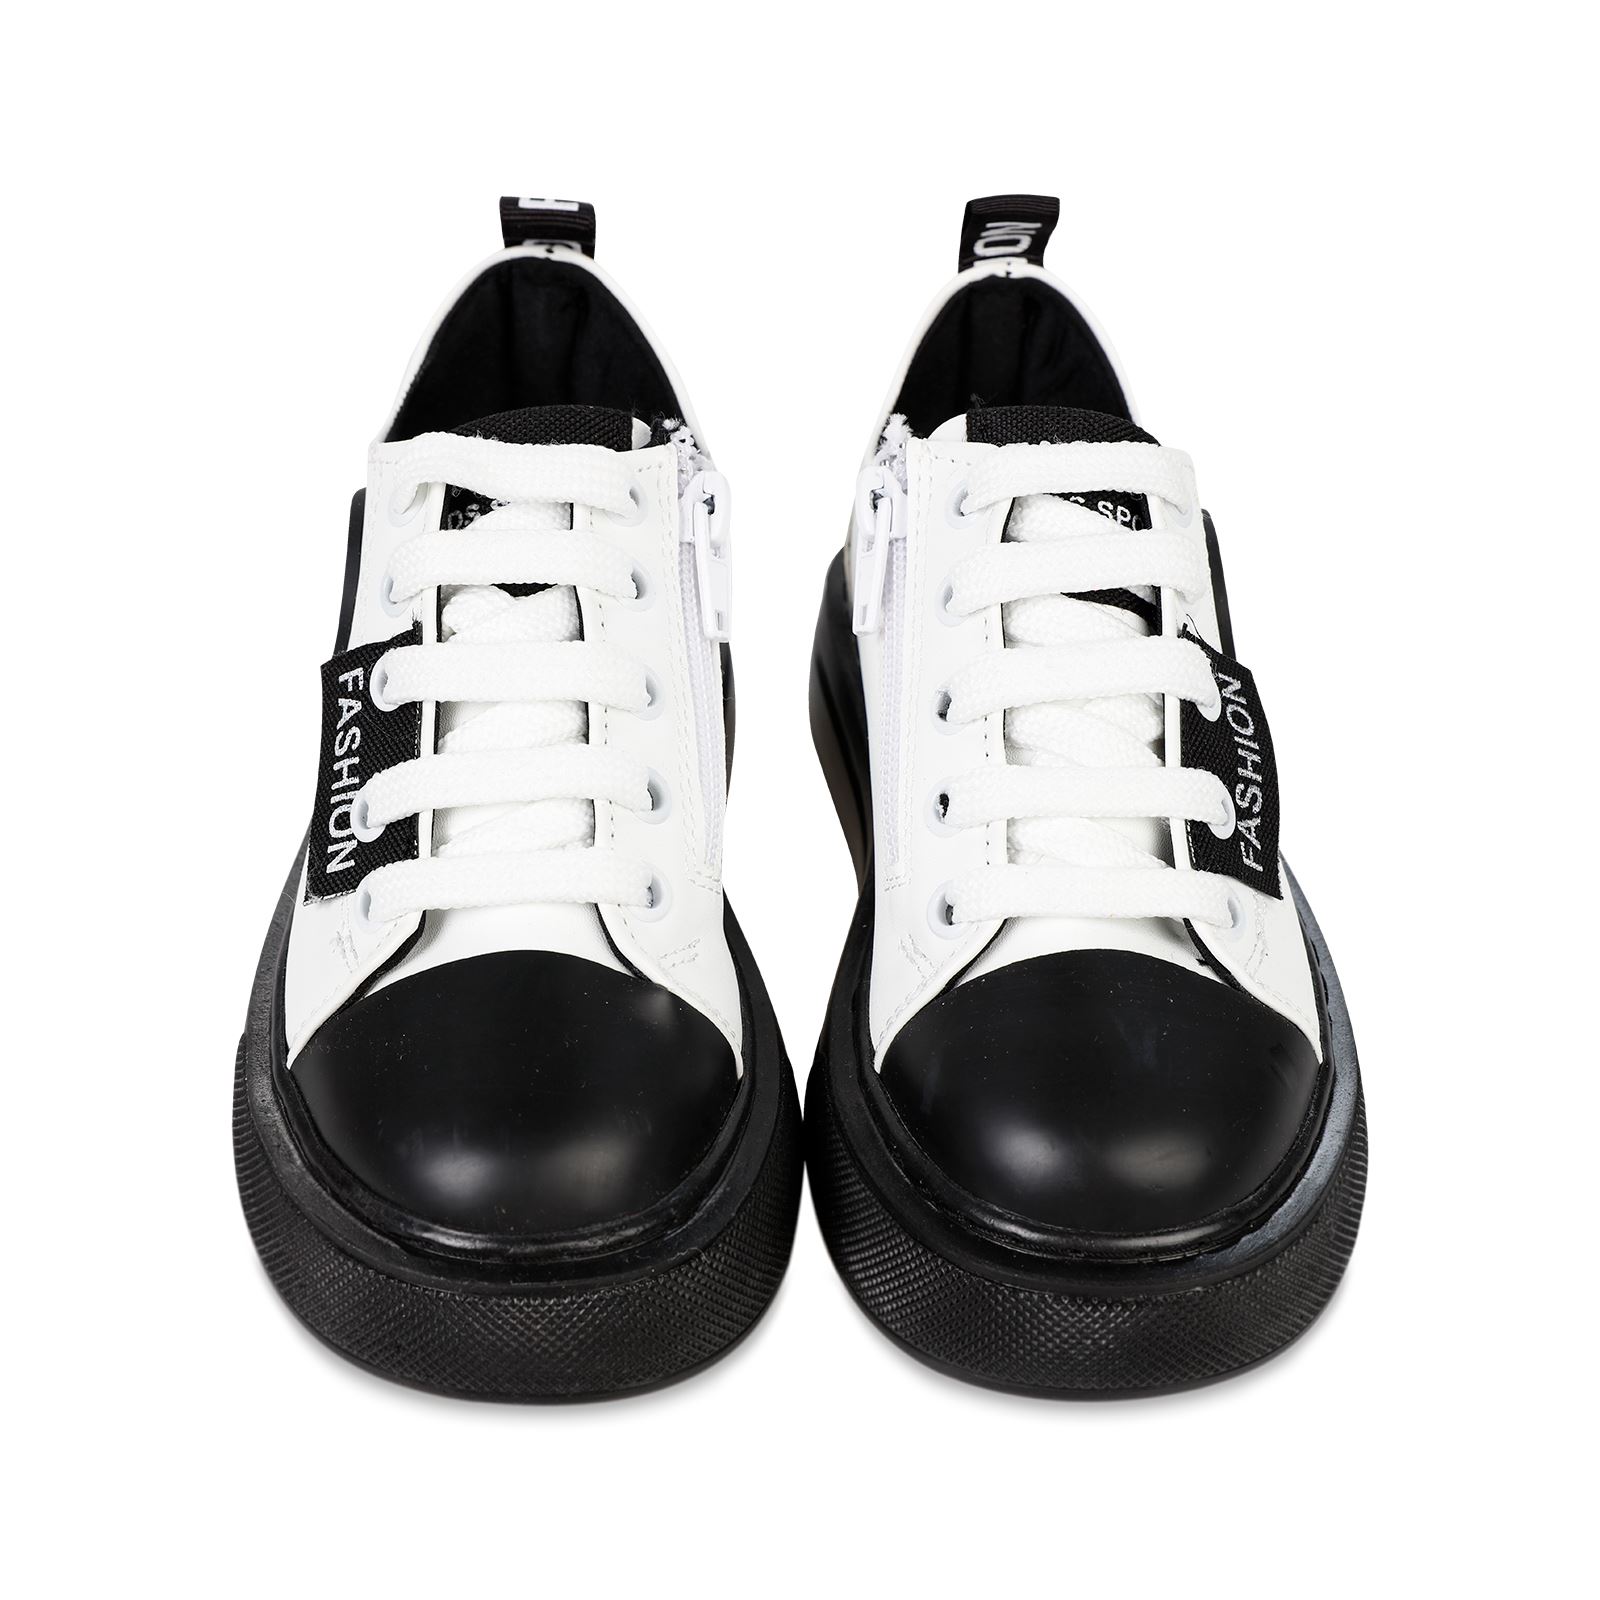 Civil Erkek Çocuk Spor Ayakkabı 31-35 Numara Beyaz